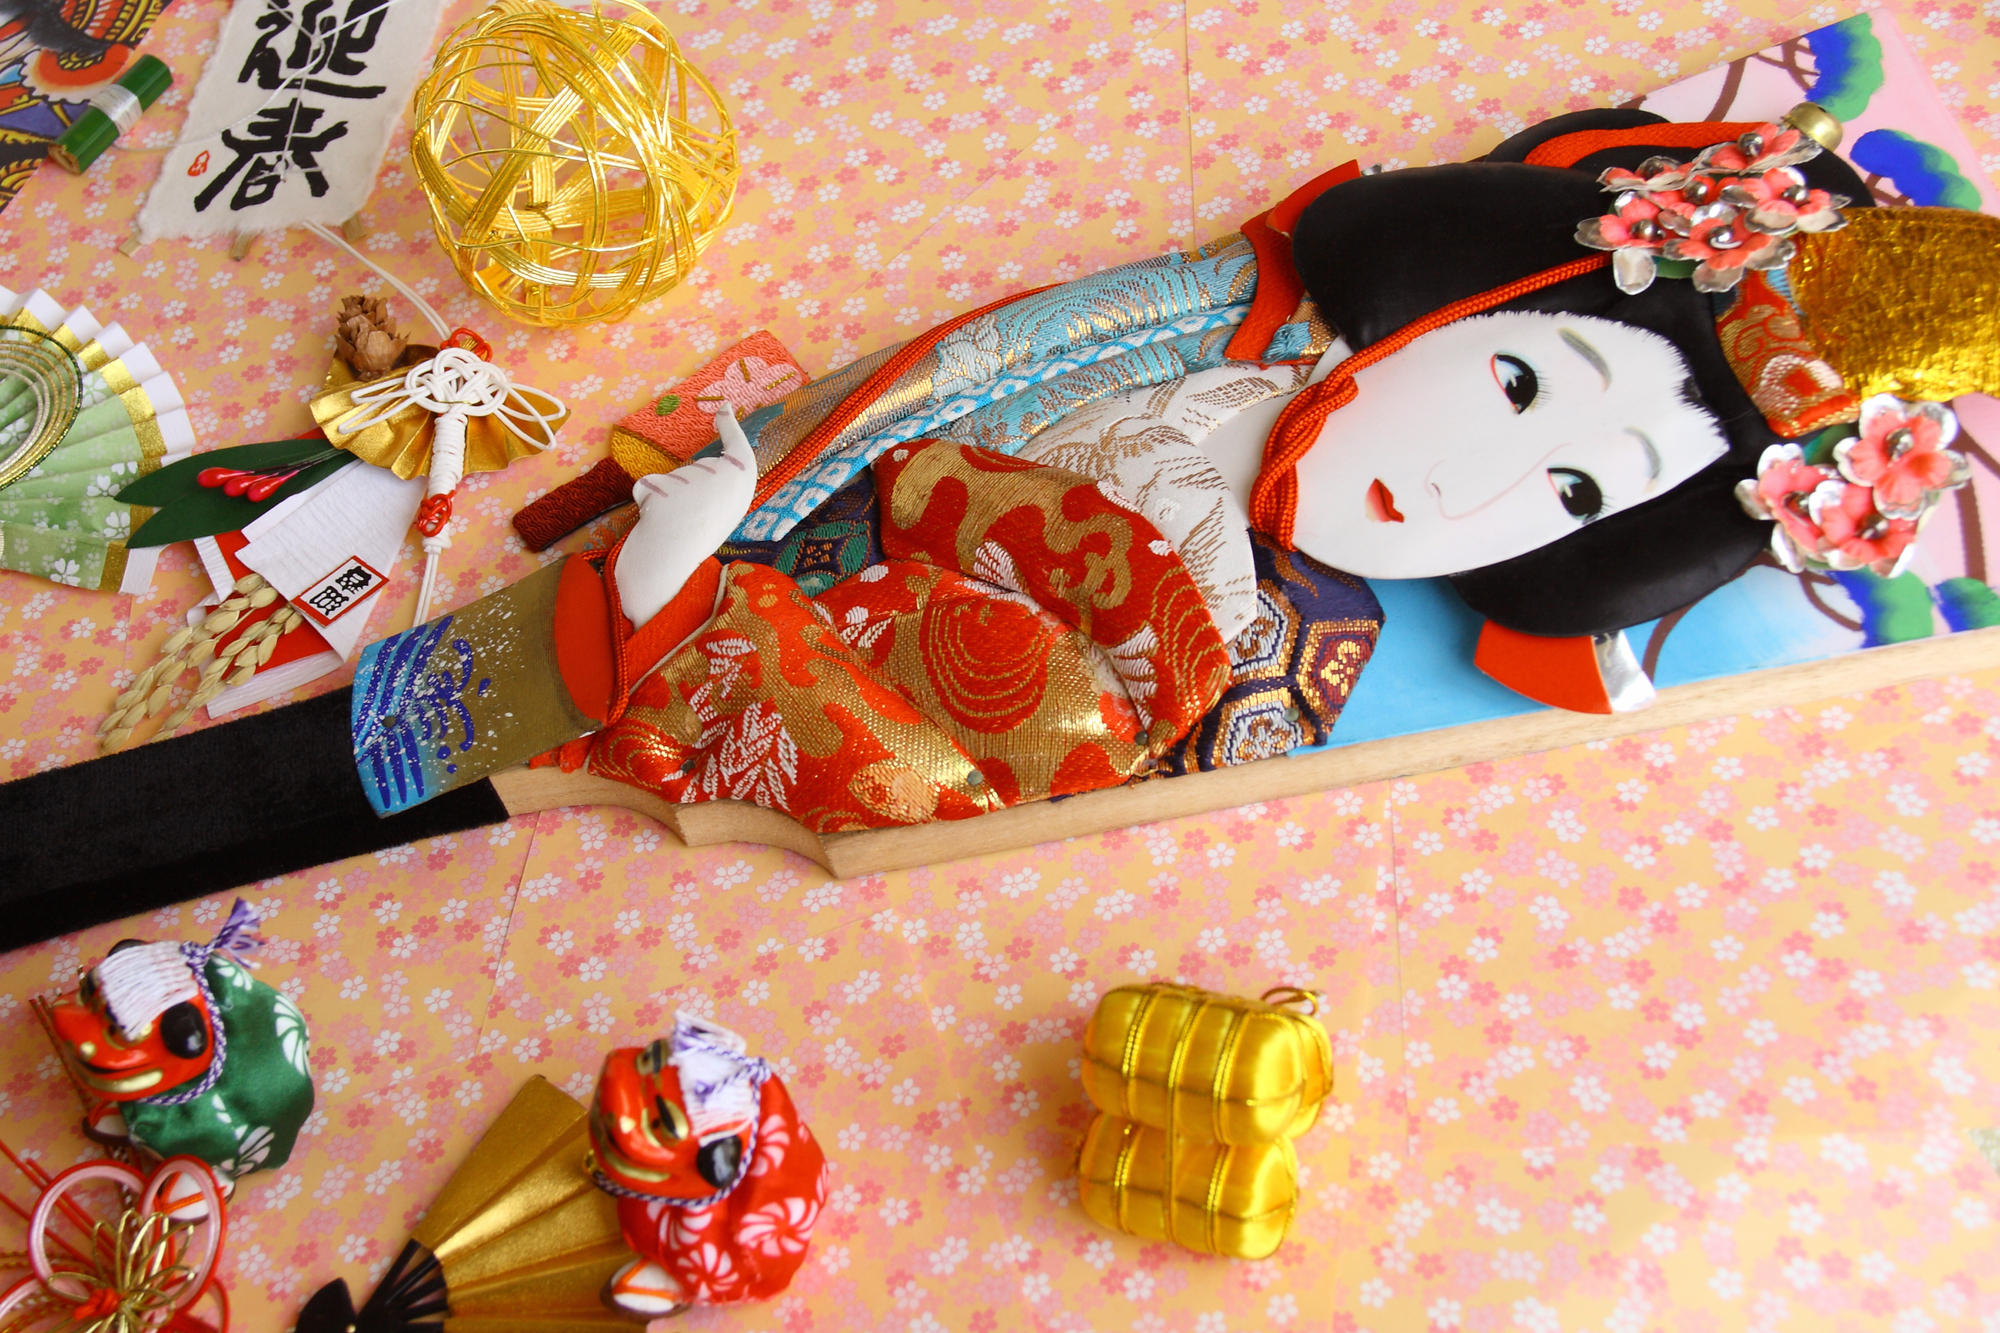 Các trò chơi truyền thống như Hanetsuki (tương tự như cầu lông), con quay (Koma) hoặc các trò chơi bài như Karuta giúp trẻ giải trí khi gắn kết với các thành viên trong gia đình và bạn bè.